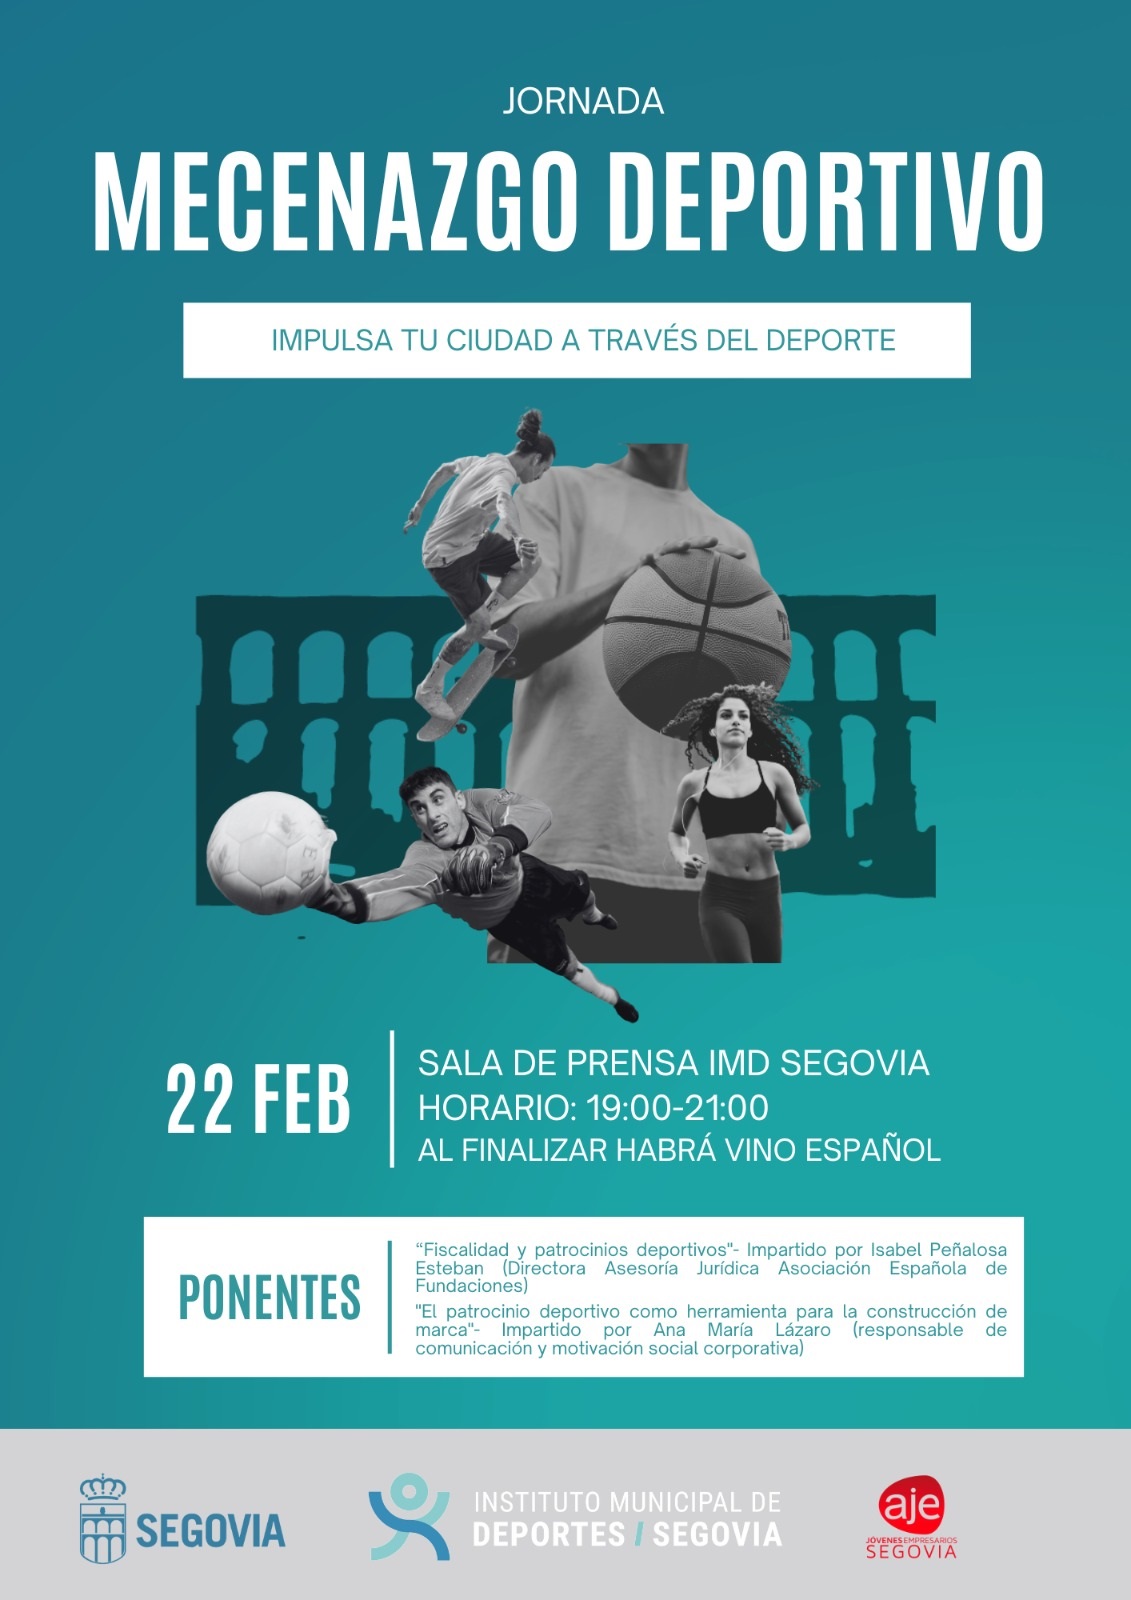 Jornada Mecenazgo Deportivo: Impulsa tu Ciudad a través del Deporte